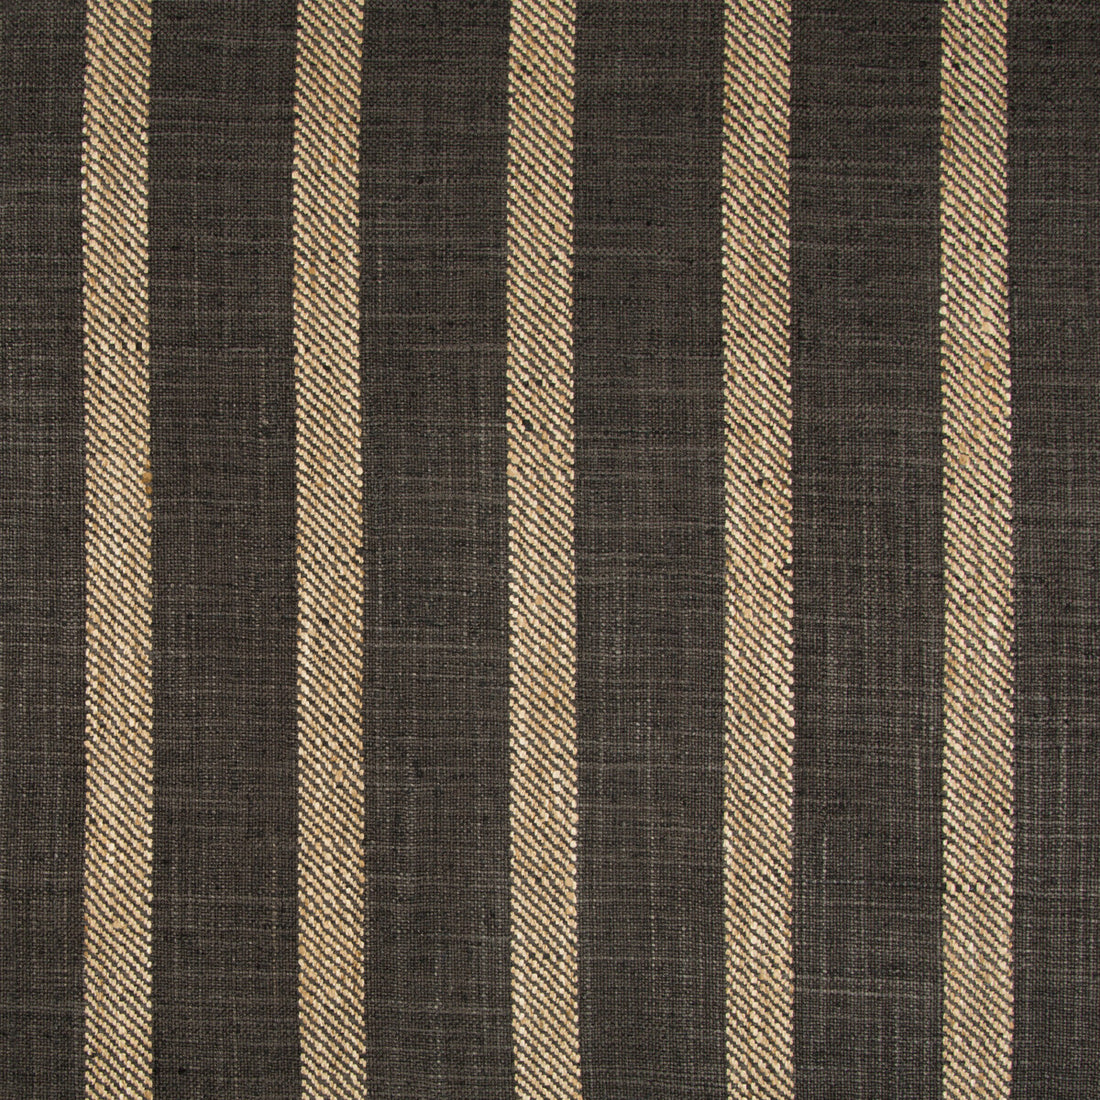 Kravet Basics fabric in 34985-816 color - pattern 34985.816.0 - by Kravet Basics